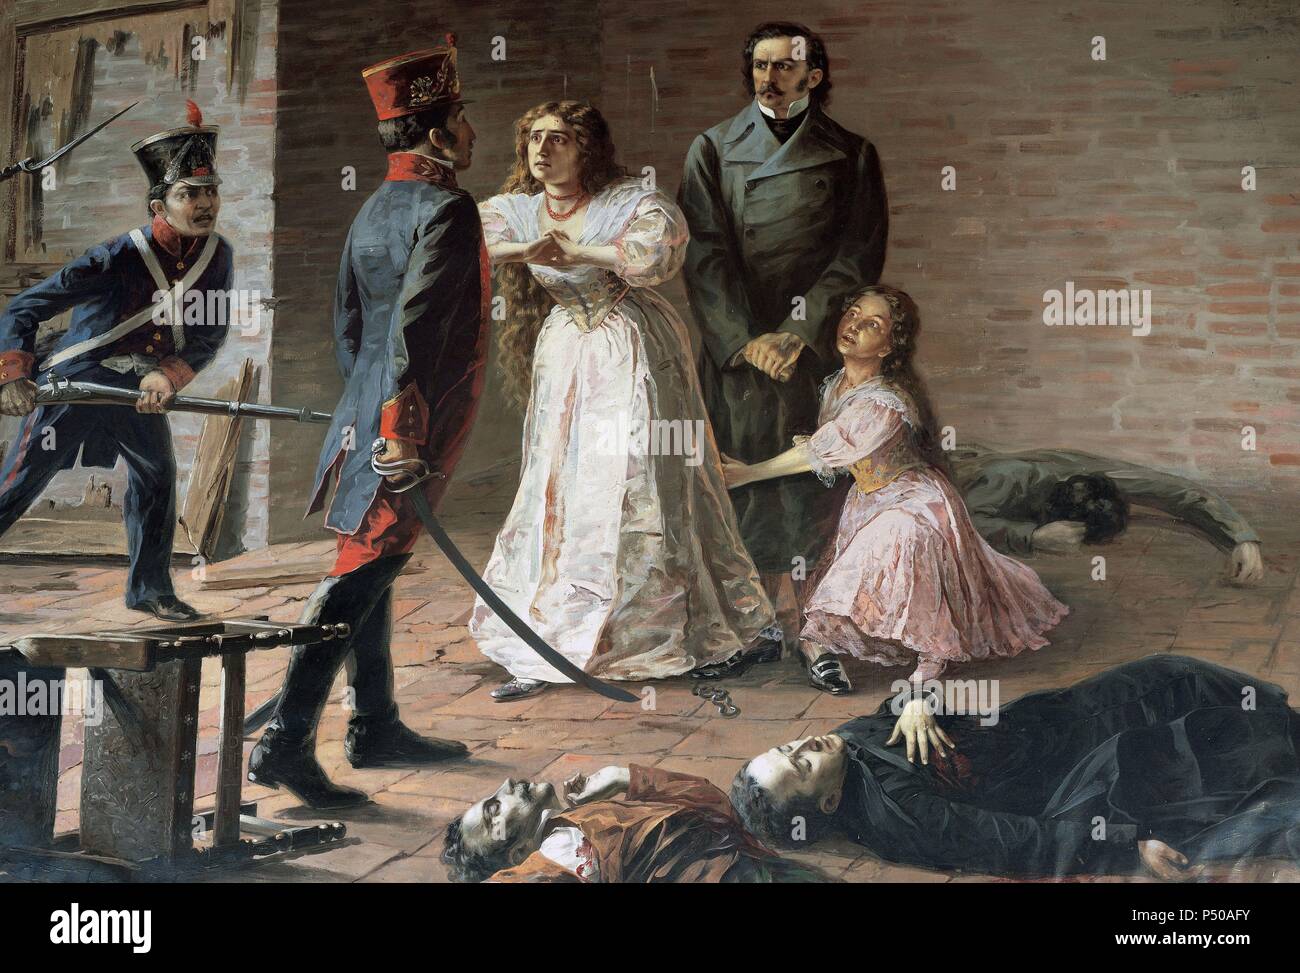 Massacre des héros du 2 août 1810 : M. Quiroga et ses filles face à l'zambos de Lima. Peinture par Cesar Villacres (1880-1941). Eloy Alfaro Military College Museum. Quito. L'Équateur. Banque D'Images